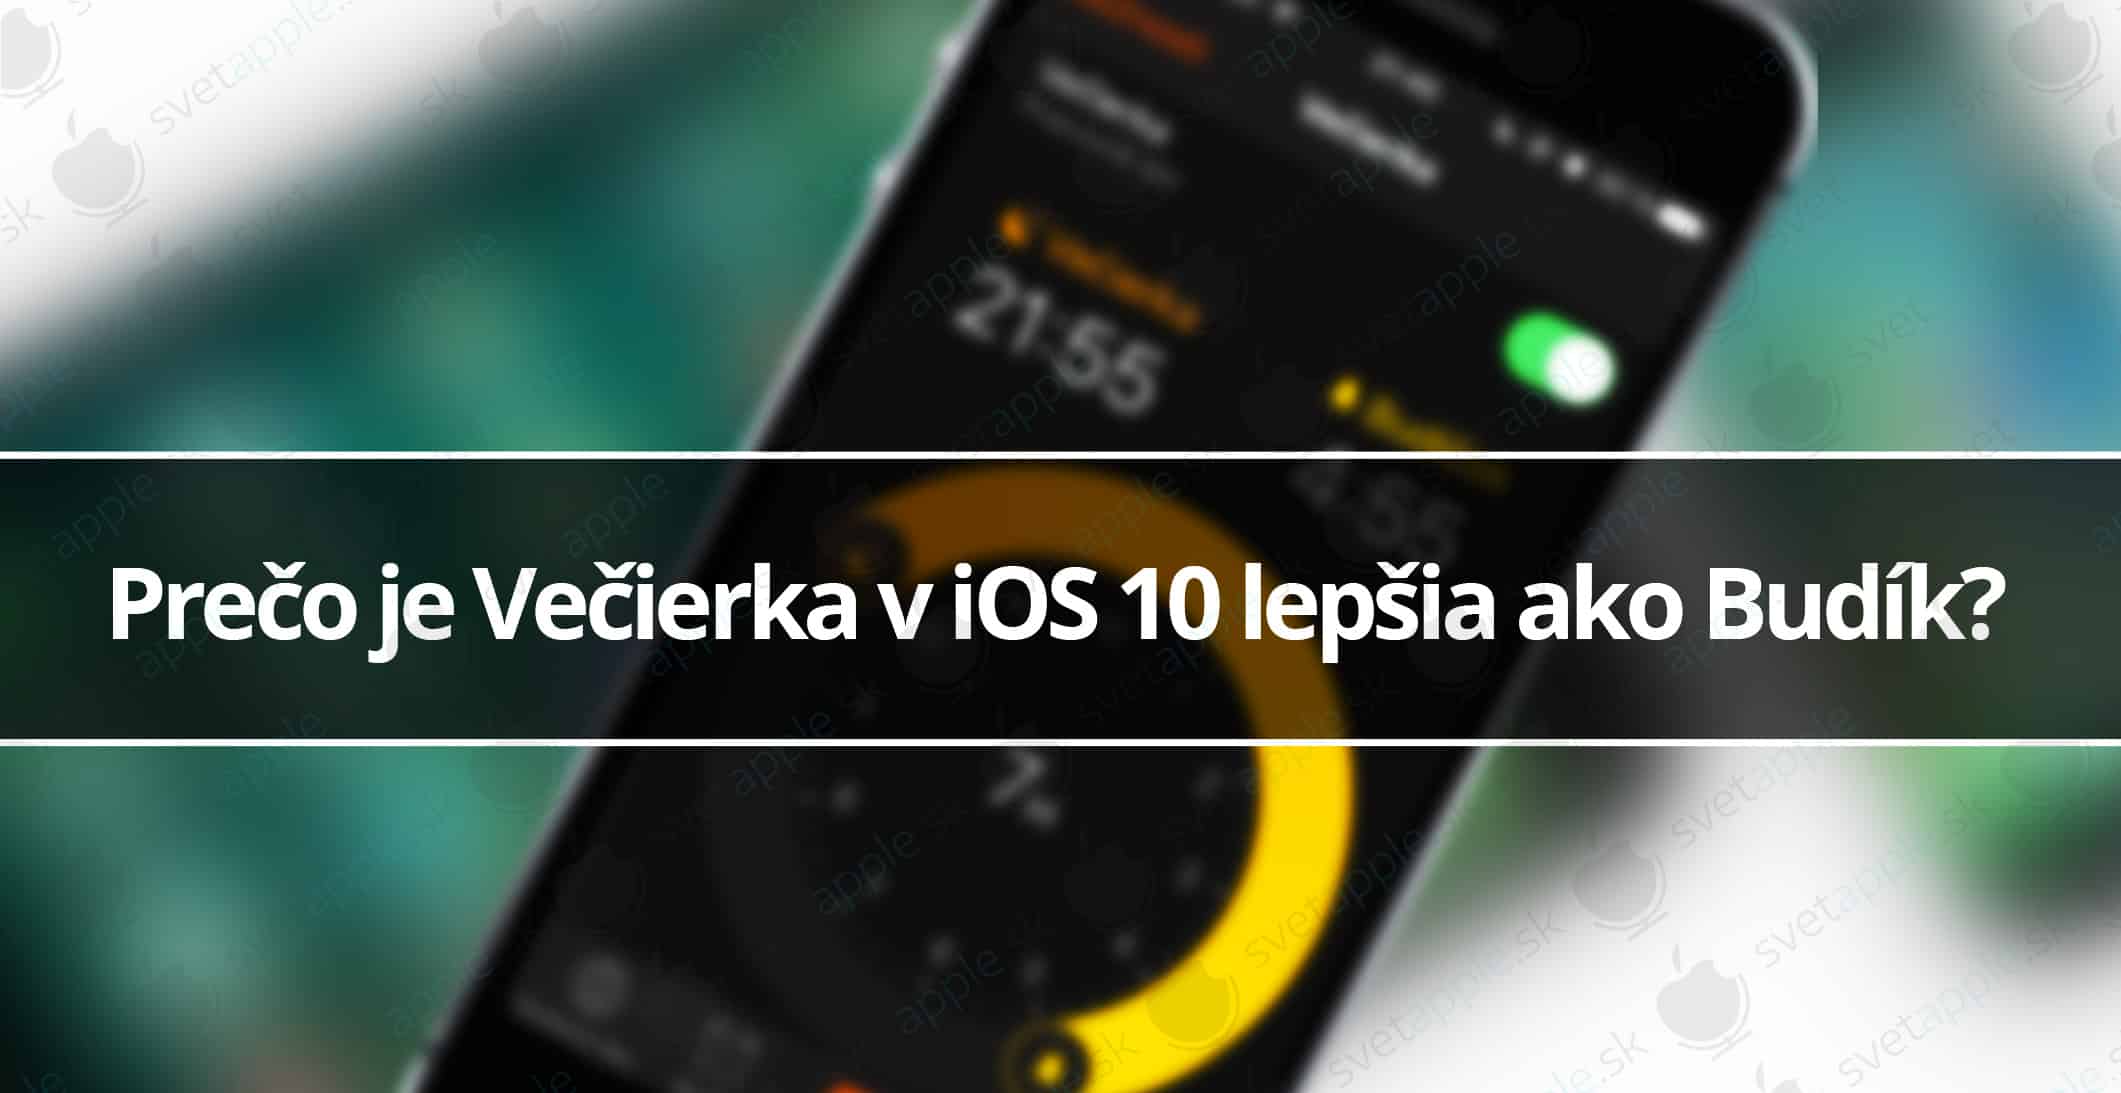 Prečo je Večierka v iOS 10 lepšia ako Budík?